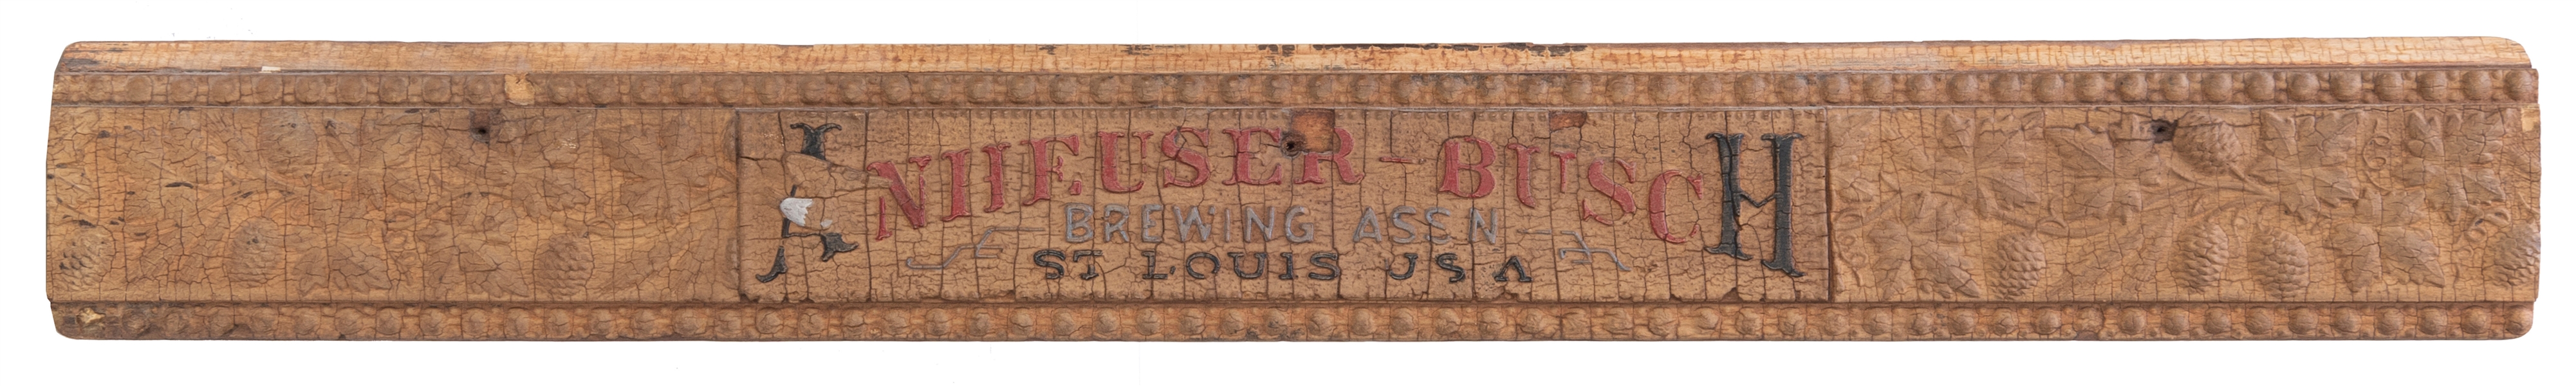  Anheuser-Busch Brewing Assn St. Louis USA hand-carved bar s...